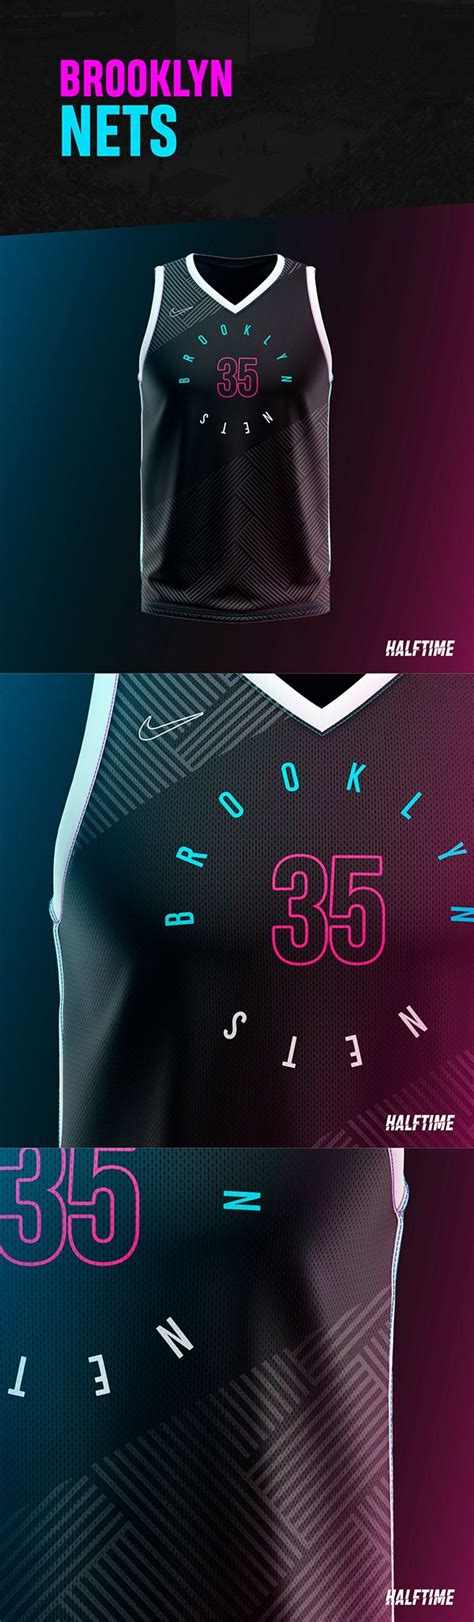 Nba Jerseys Neon Edition On Behance Best Basketball Jersey Design